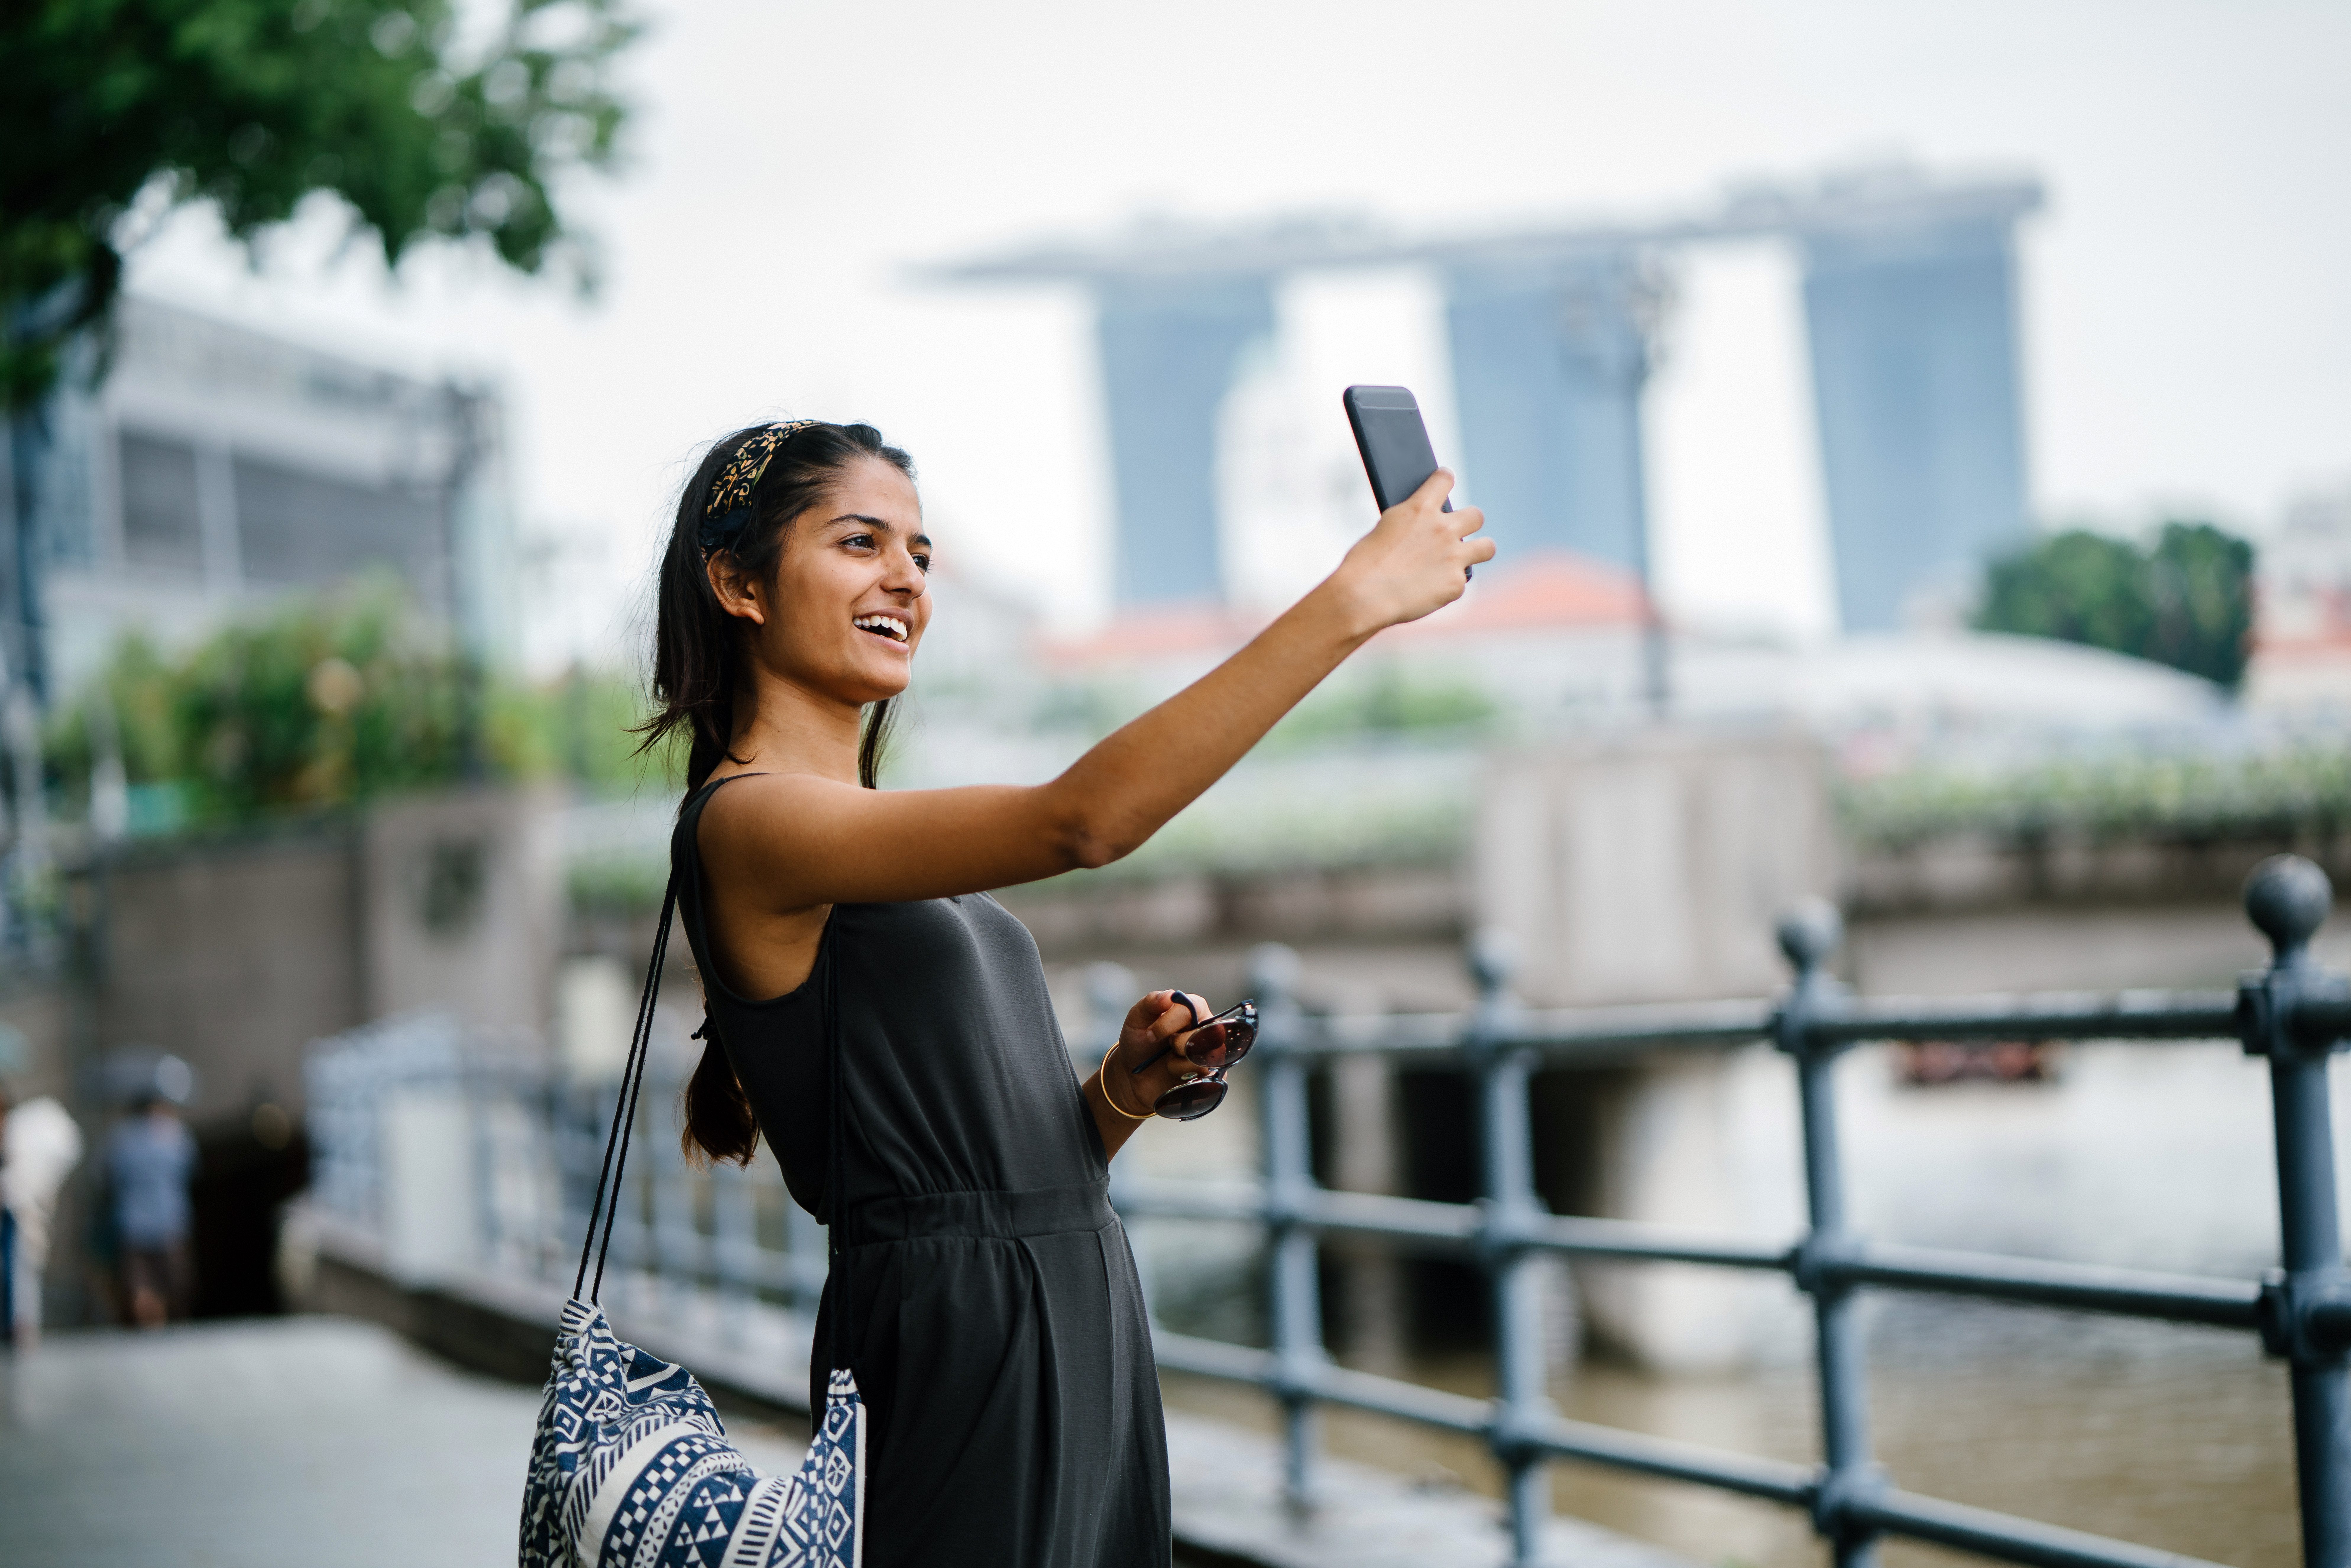 Omeklive. Как фоткают индийских девушек. Фото женщина с телефоном в руке городской фон.